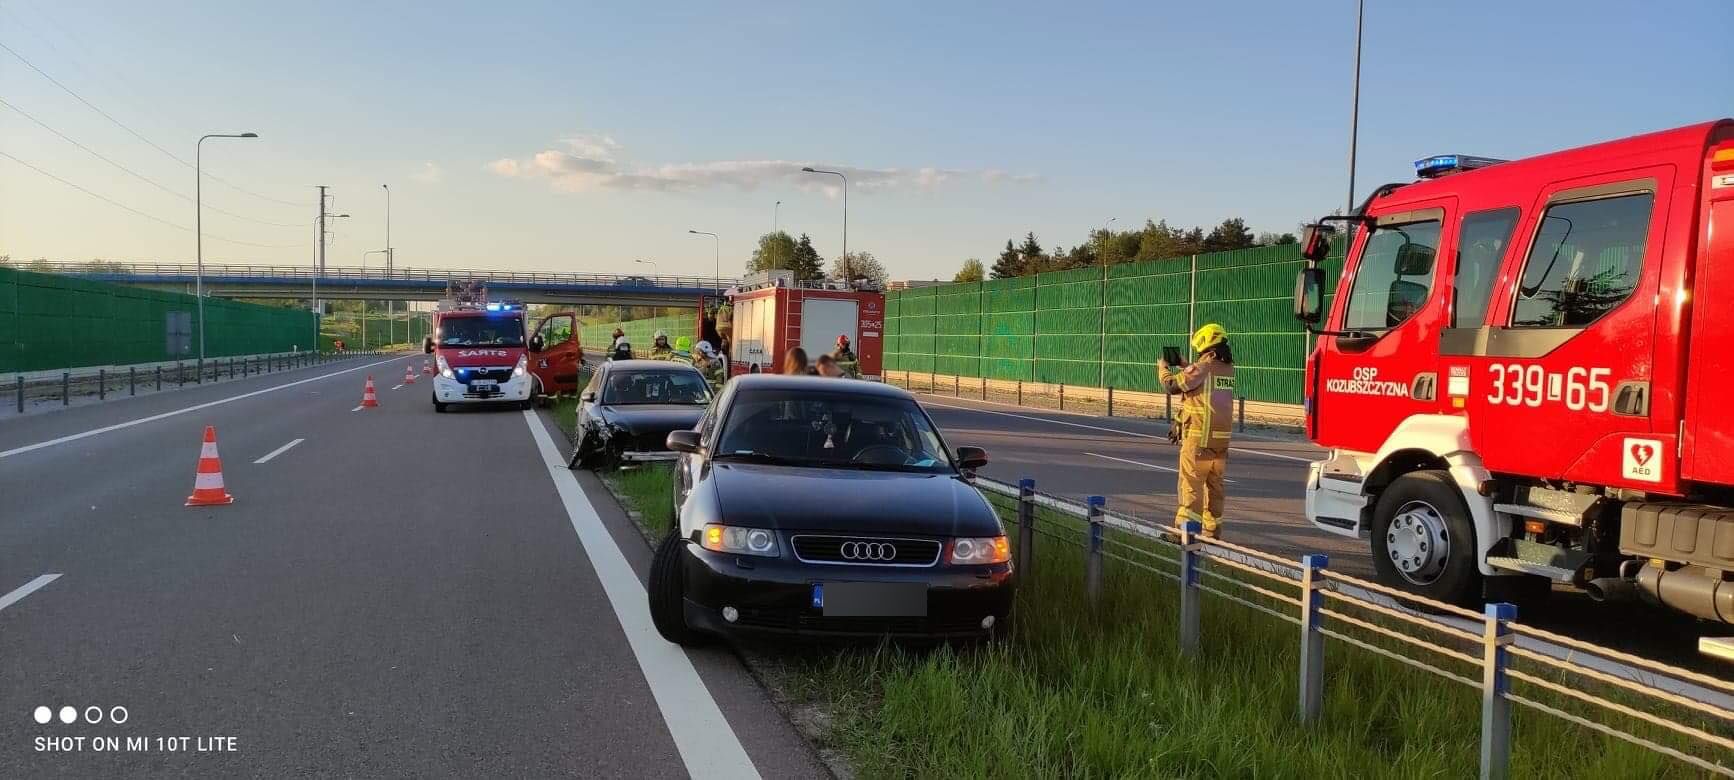 Audi uderzyło w bariery linowe na obwodnicy Lublina (zdjęcia)